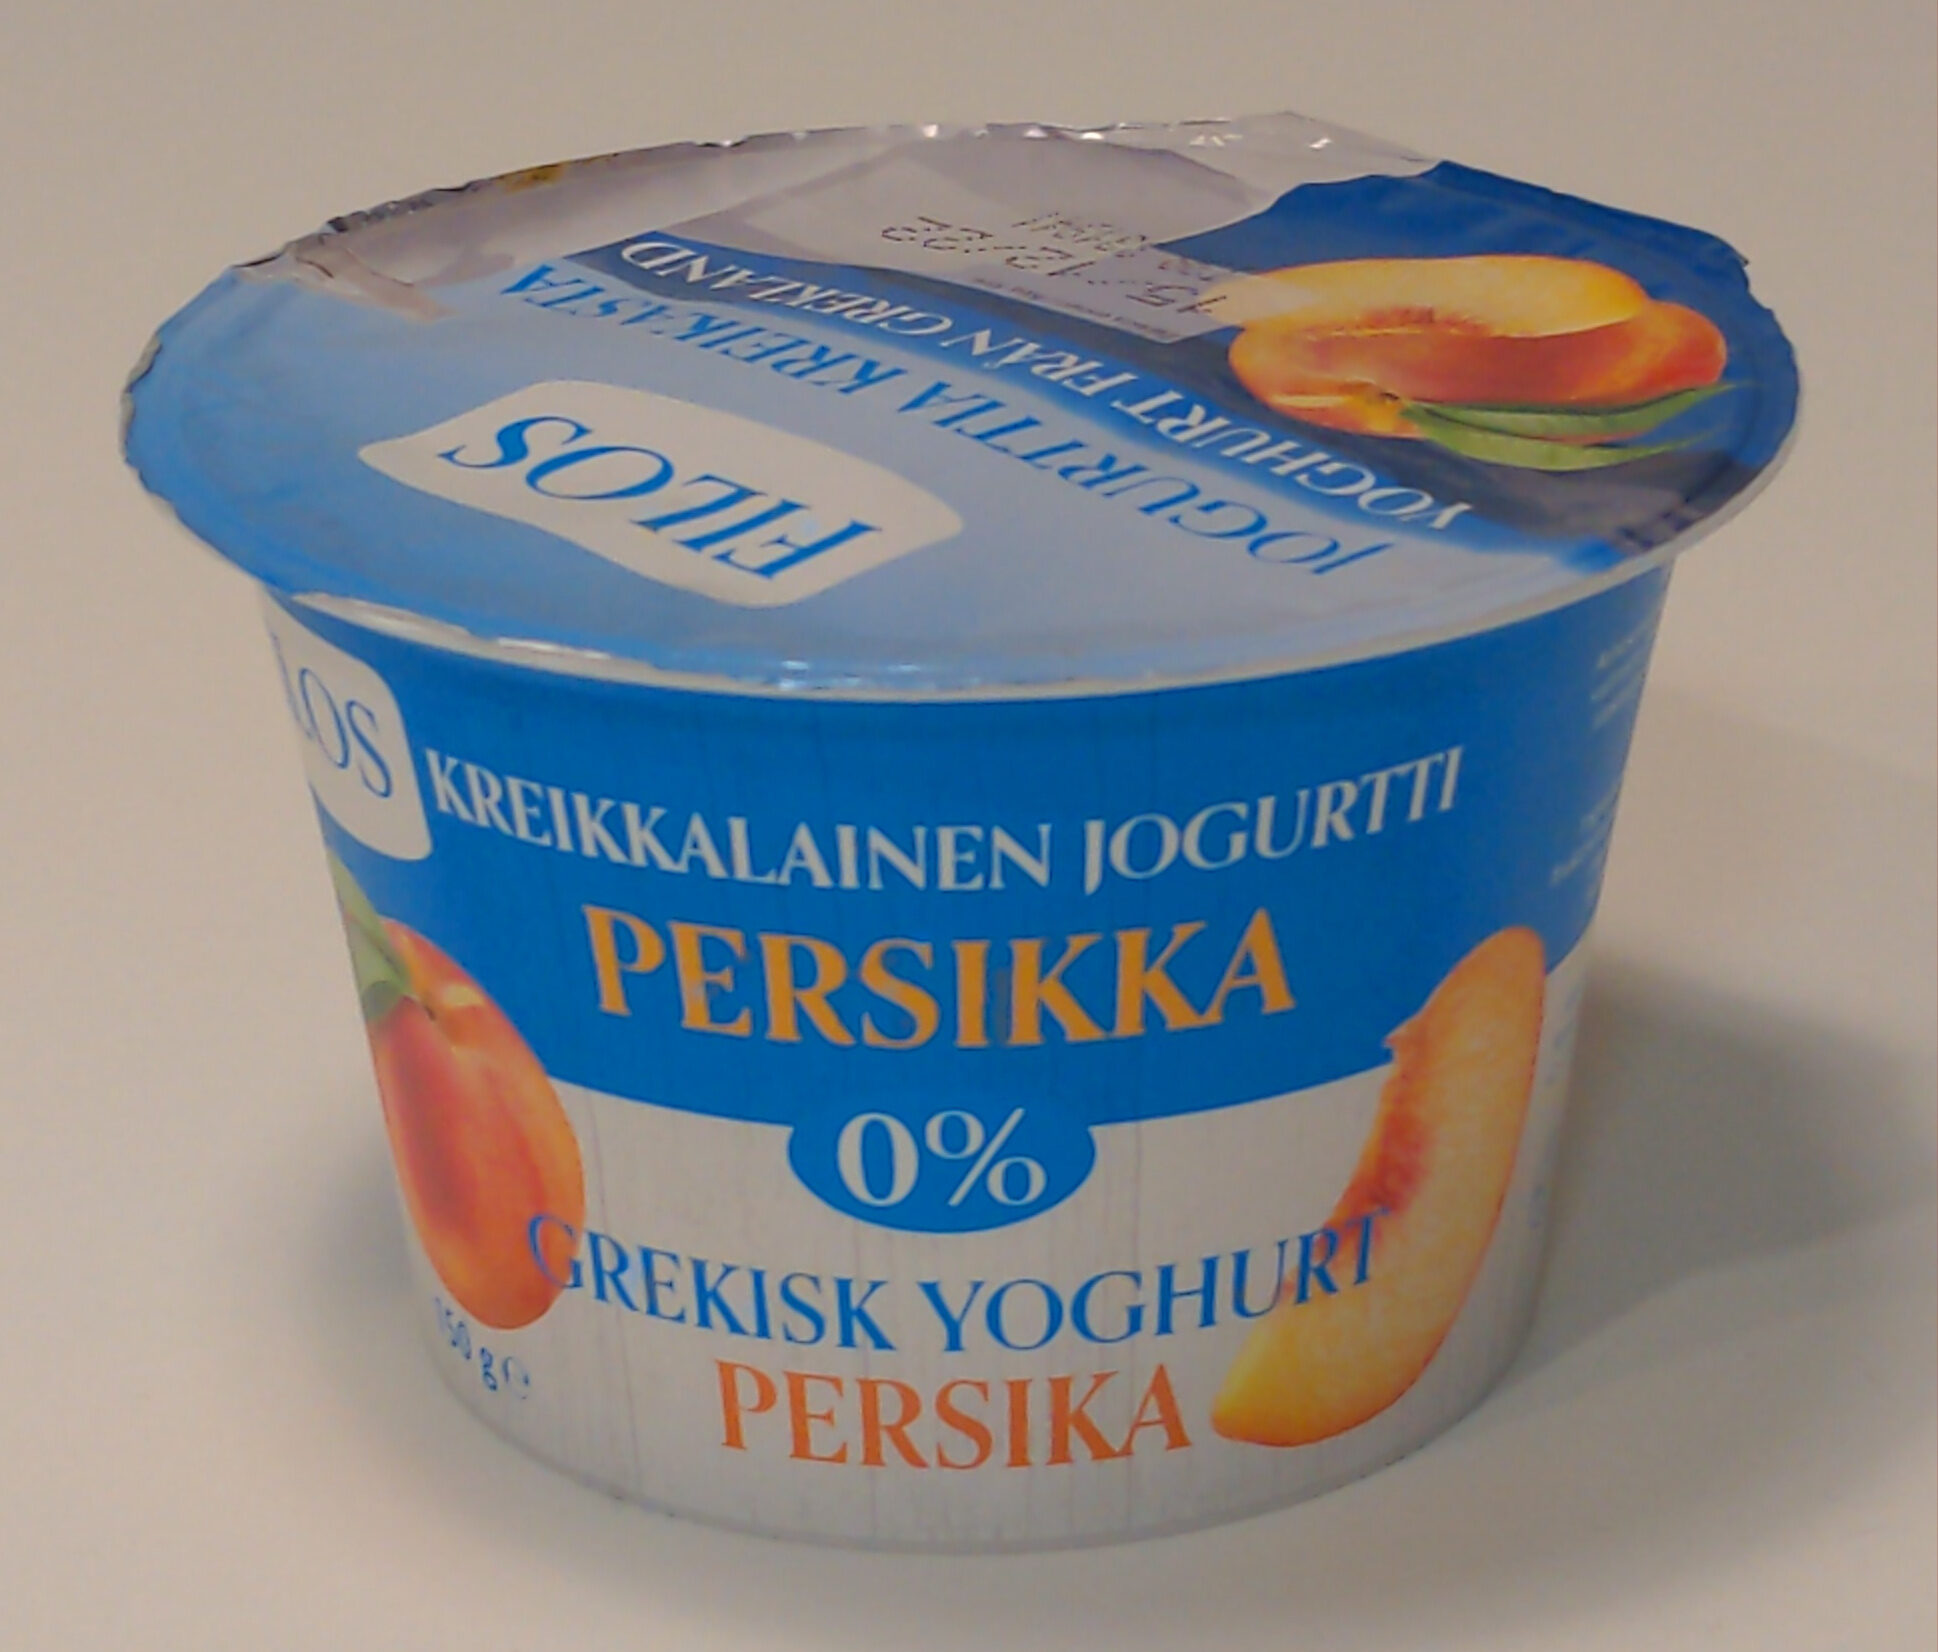 Kreikkalainen jogurtti persikka 0% - Product - fi